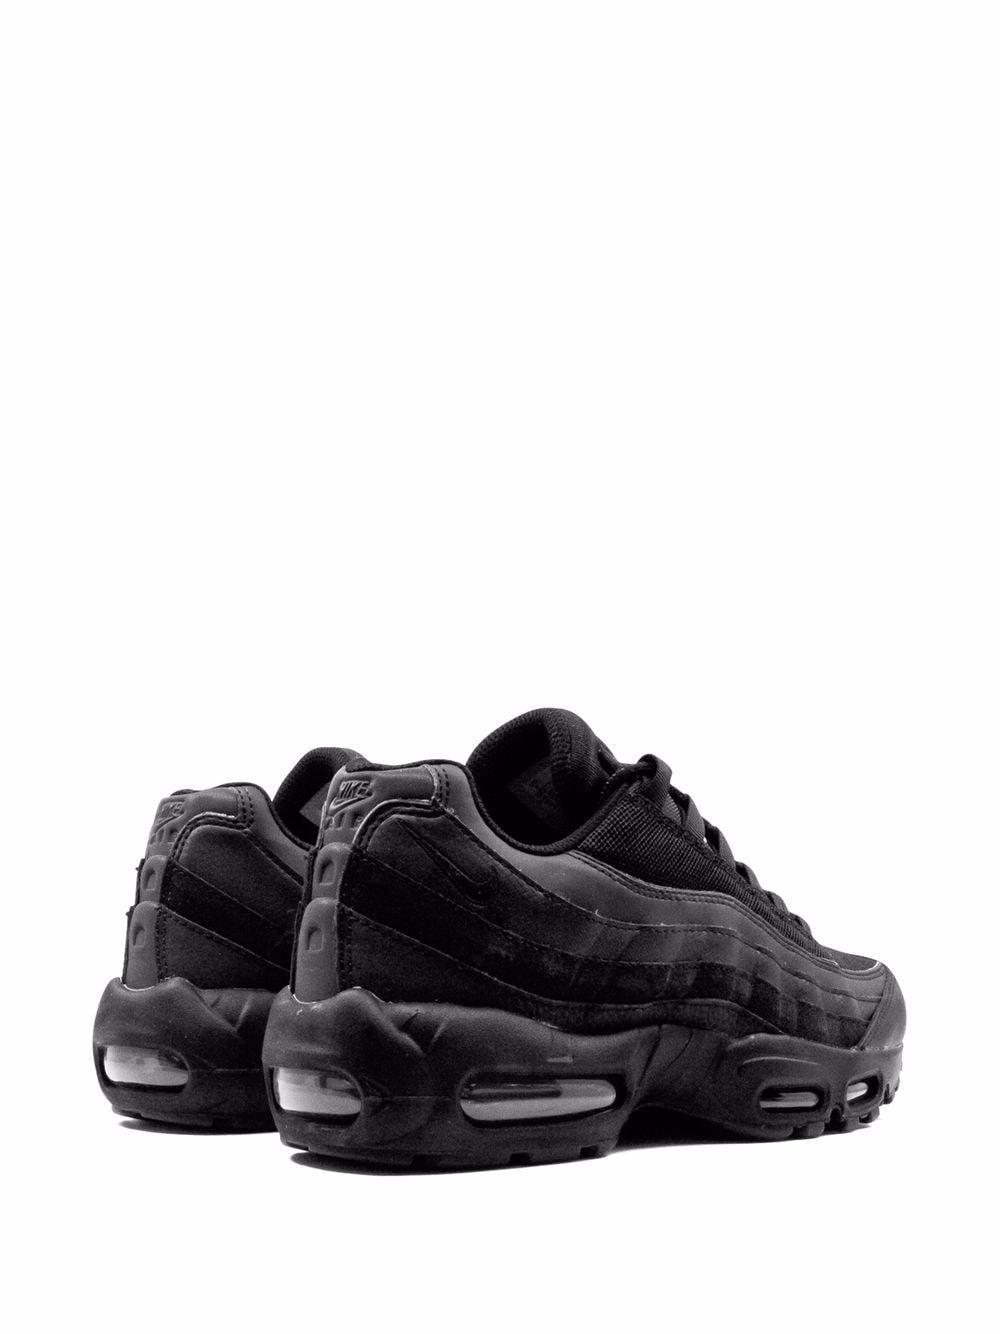 Nike Air Max 95 Essential "Triple Black" Sneakers -